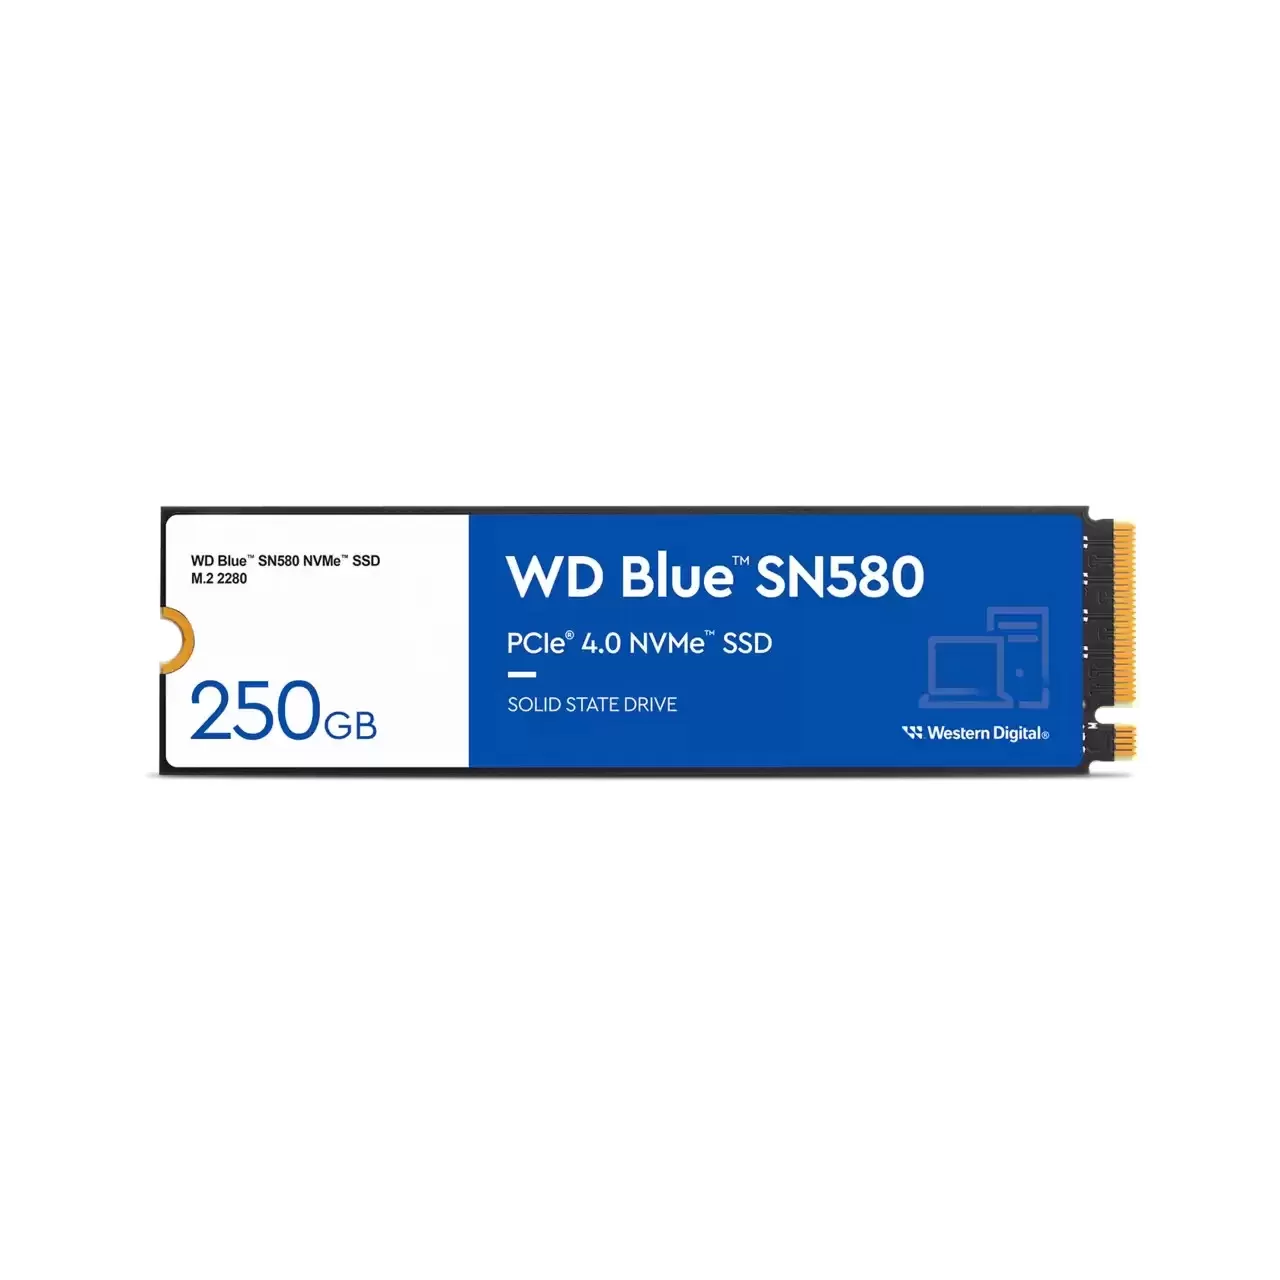 Hard disk ssd western digital wd blue sn580 250gb m.2 2280